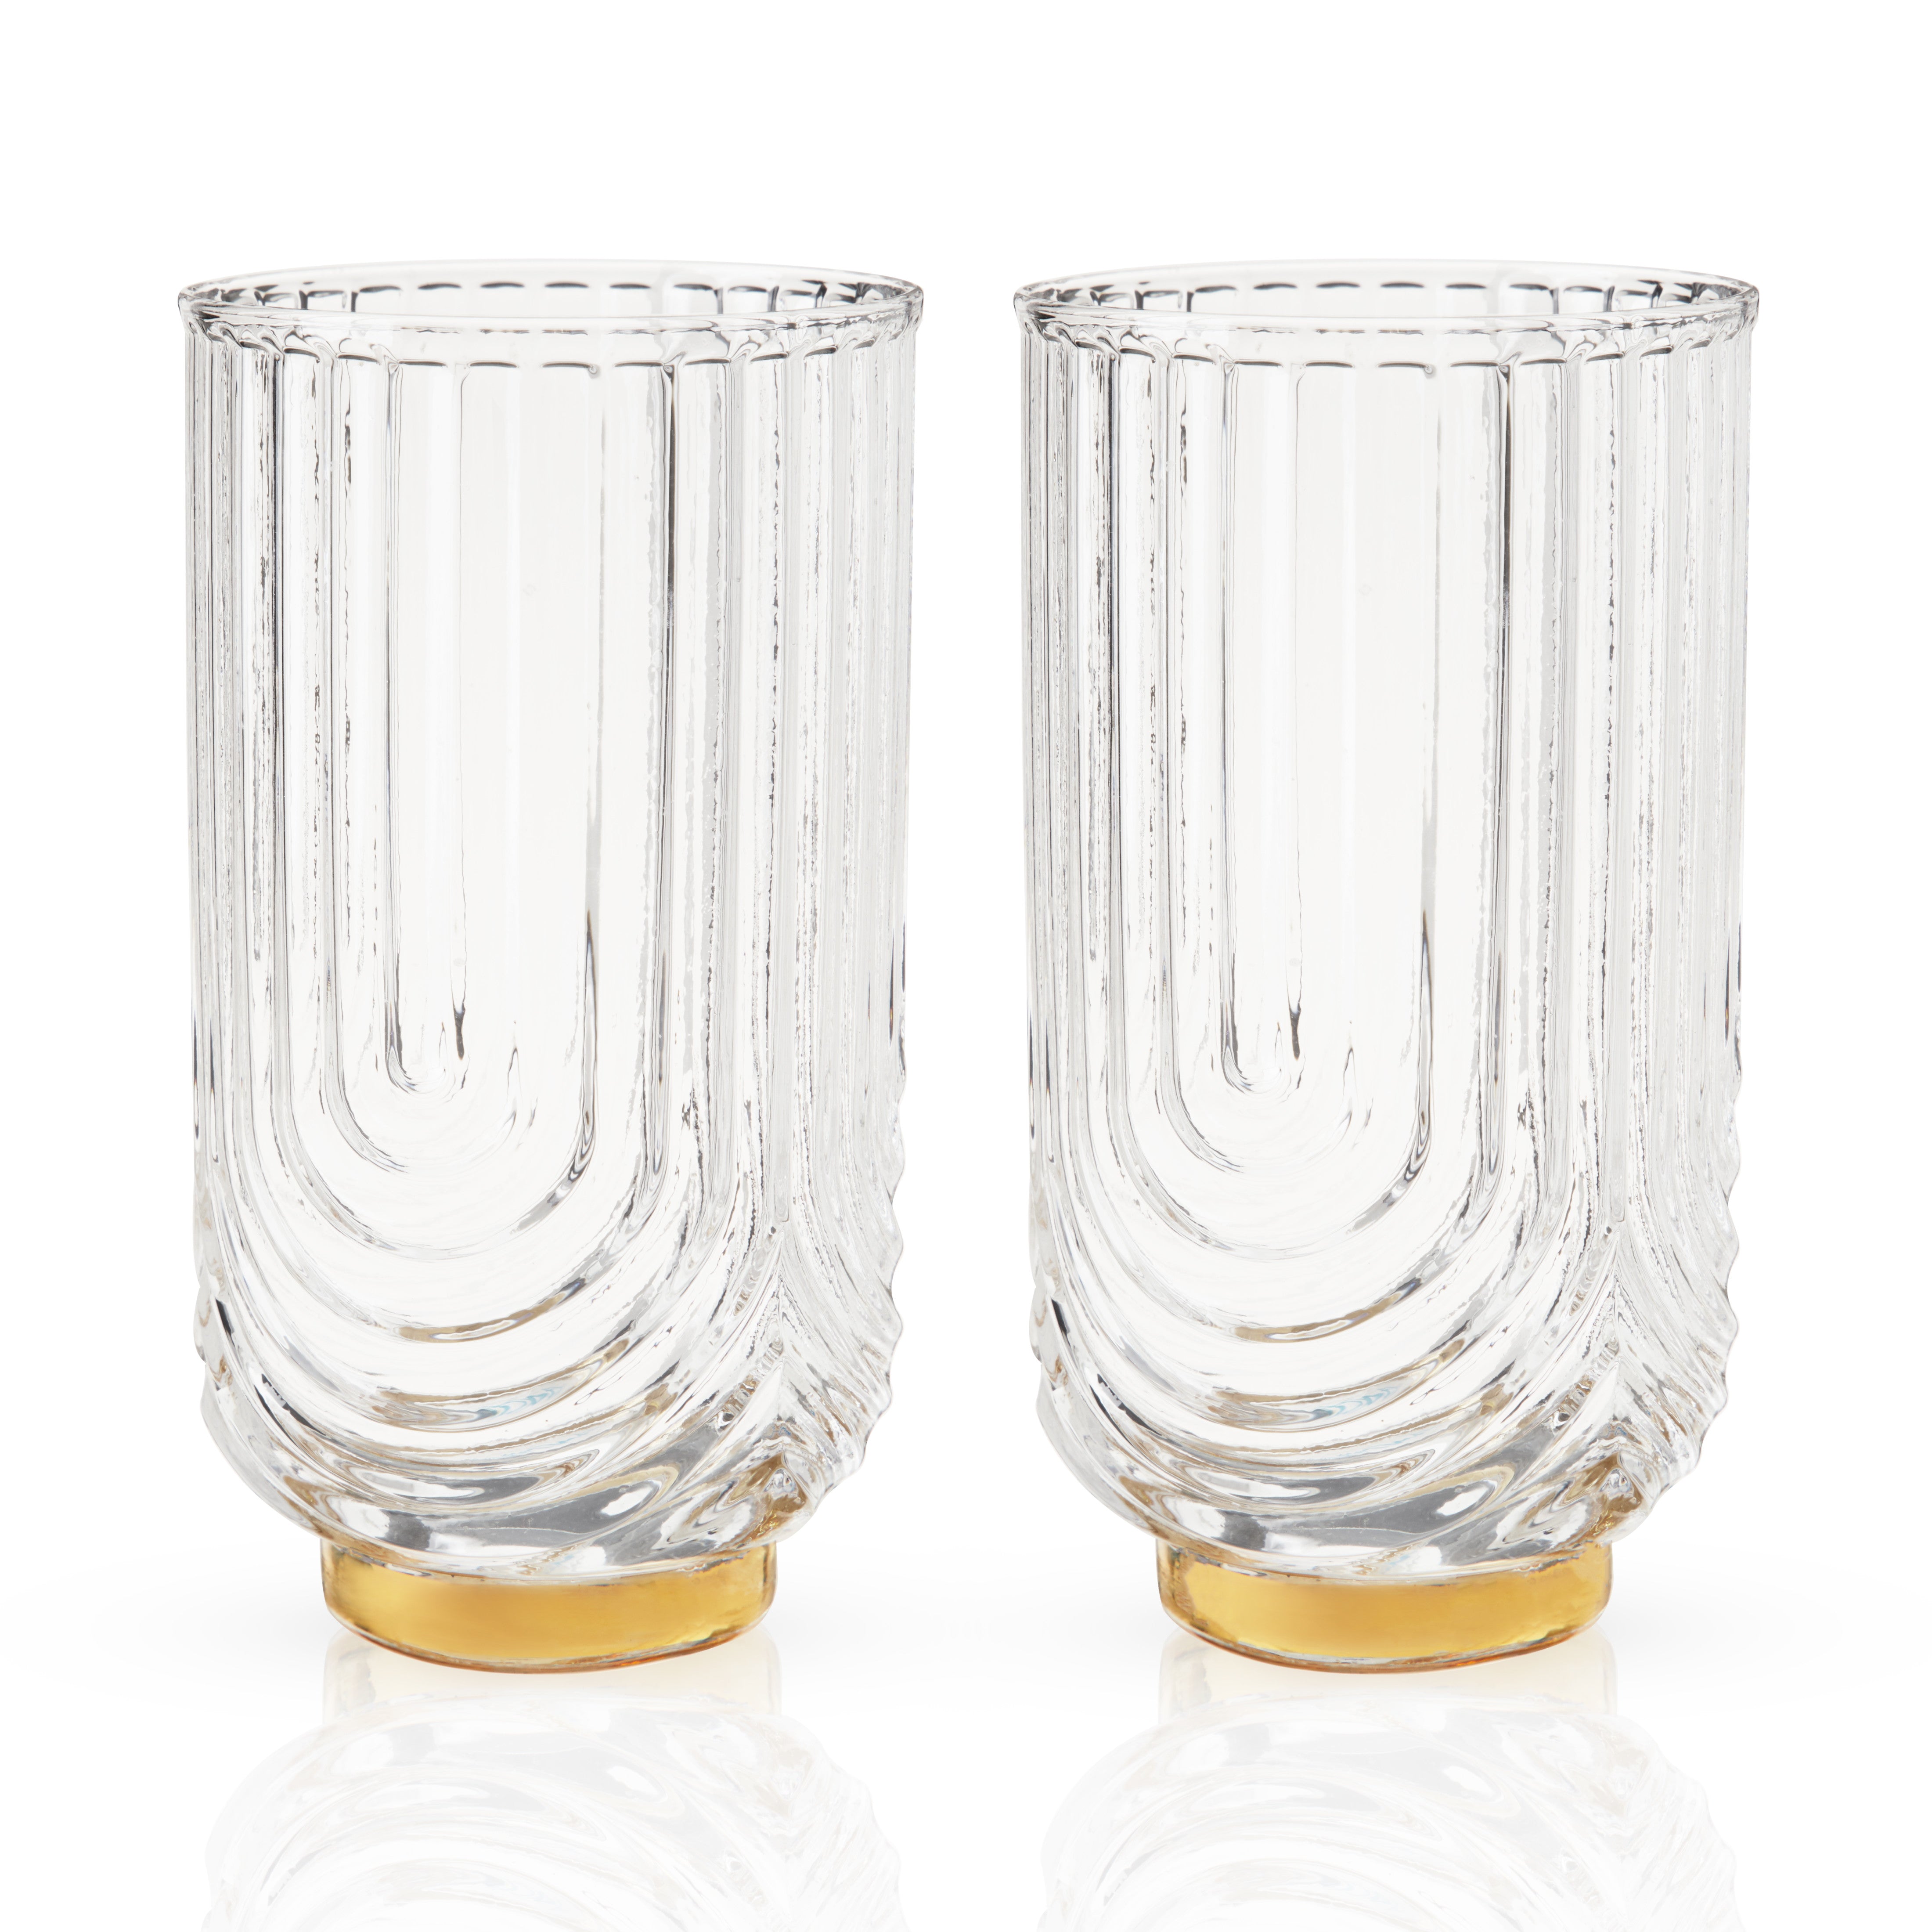 Viski Gold & Crystal Patterned Highball Glasses